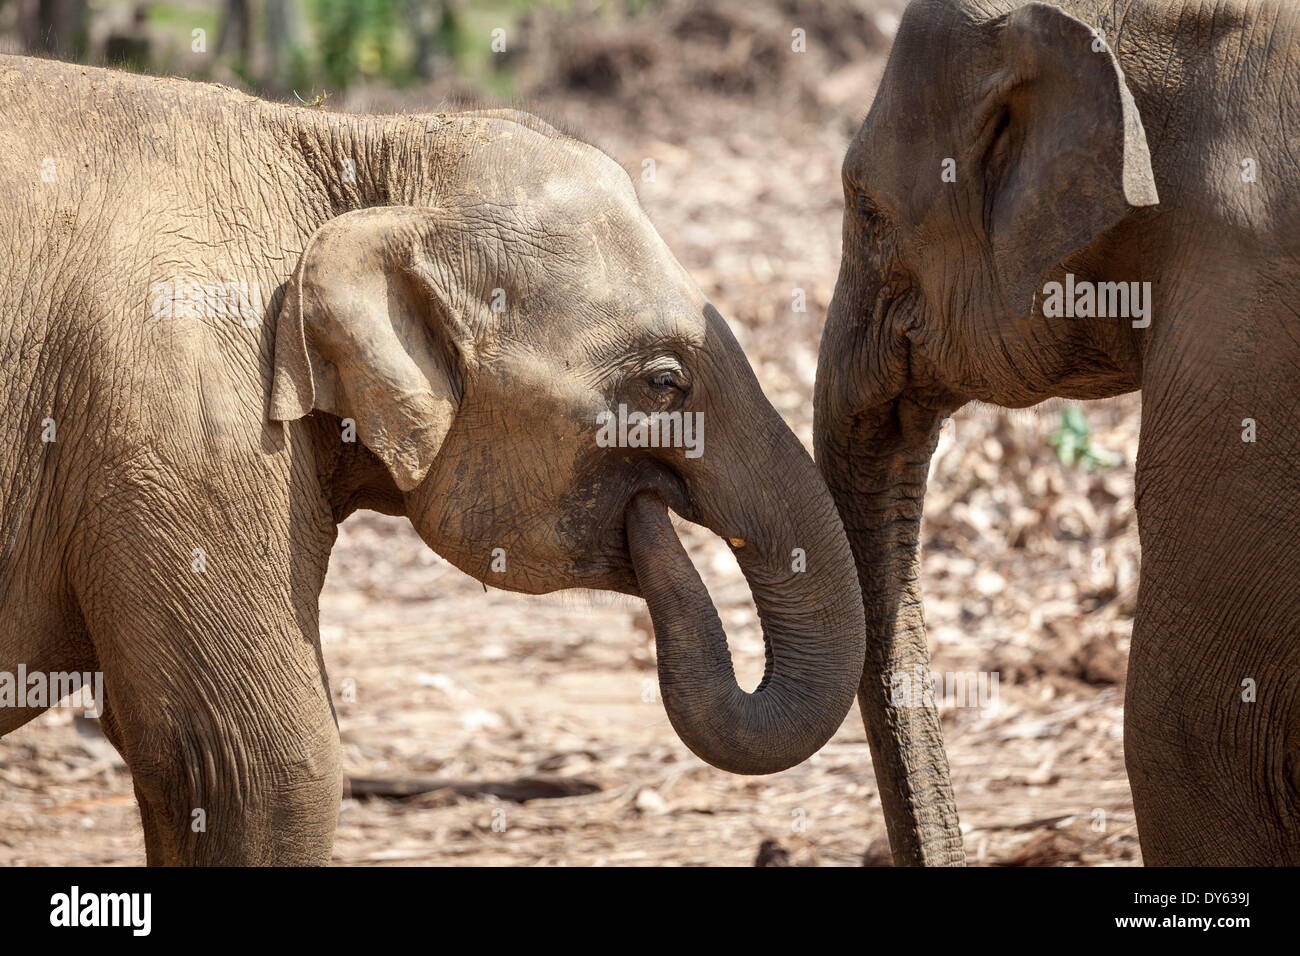 Juvenile elephants (Elephantidae) playing with their trunks, Pinnewala Elephant Orphanage, Sri Lanka, Asia Stock Photo